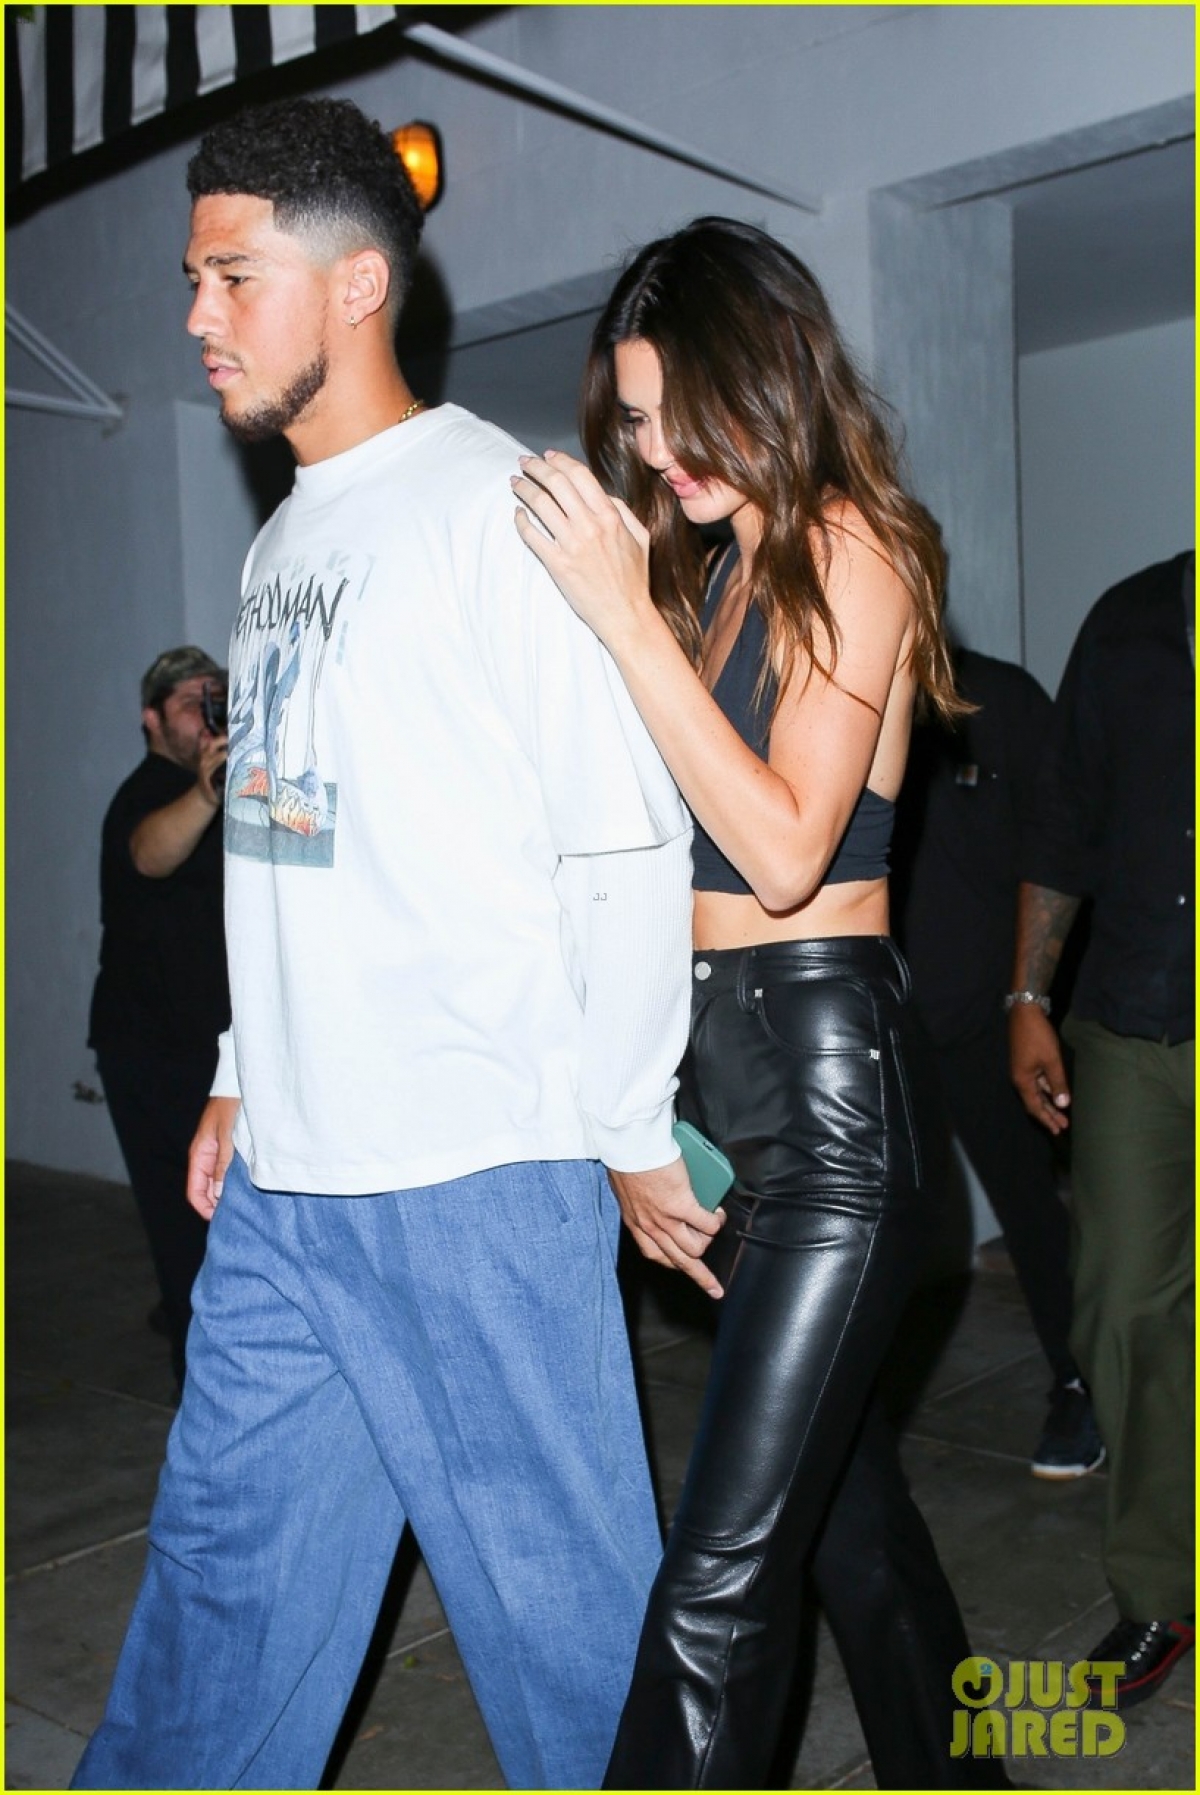 Kendall Jenner xinh đẹp đi chơi đêm cùng bạn trai sau khi tái hợp - Ảnh 2.